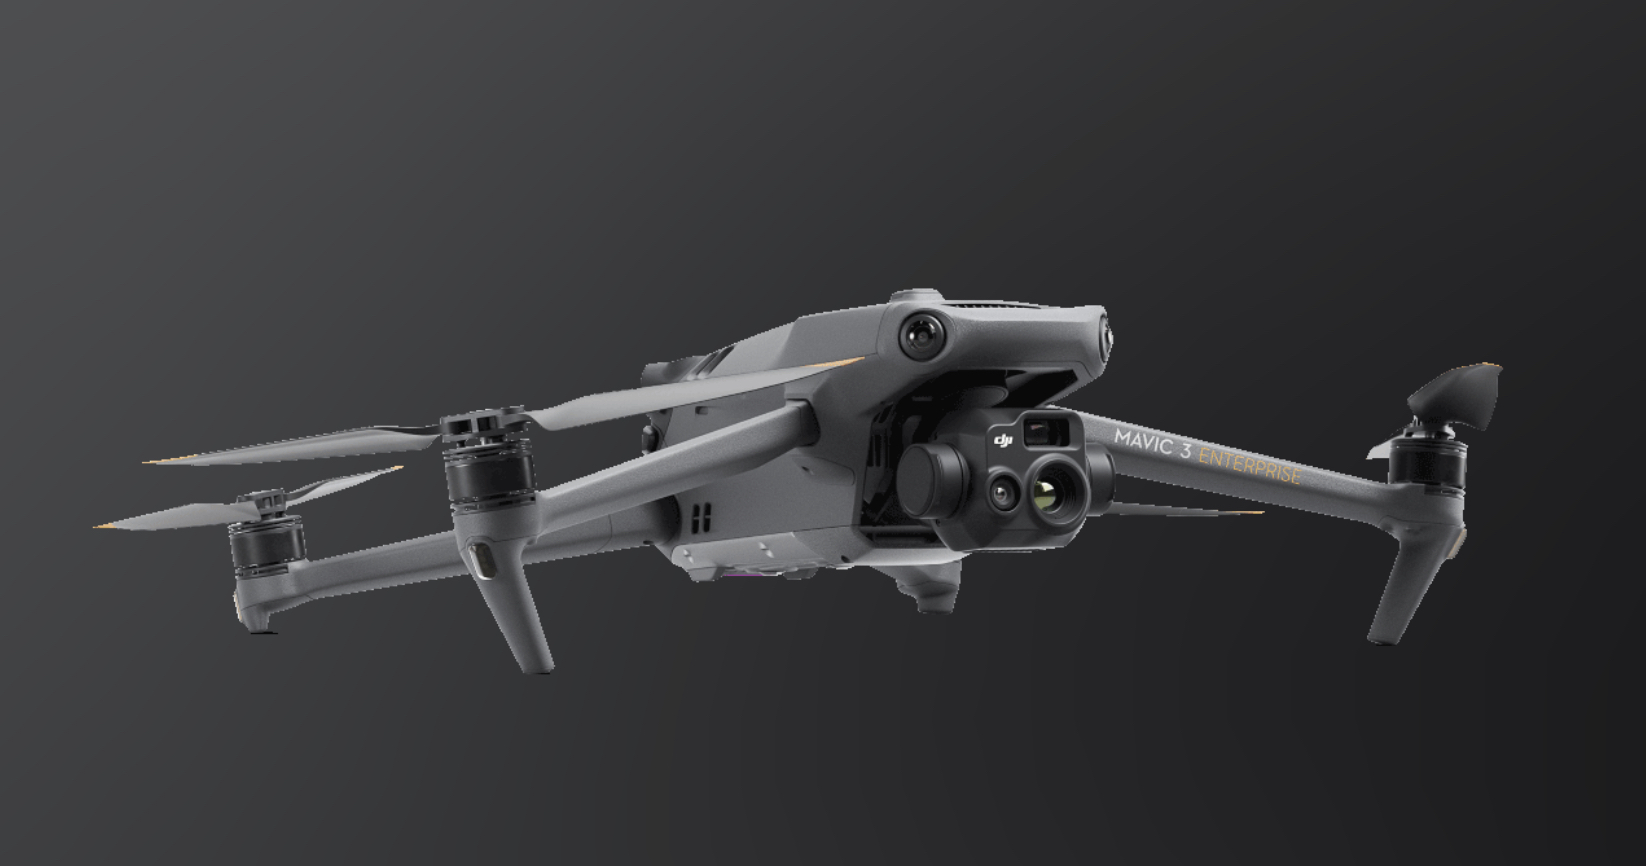 DJI Mavic 3 Enterprise, Portable yet Powerful Drone